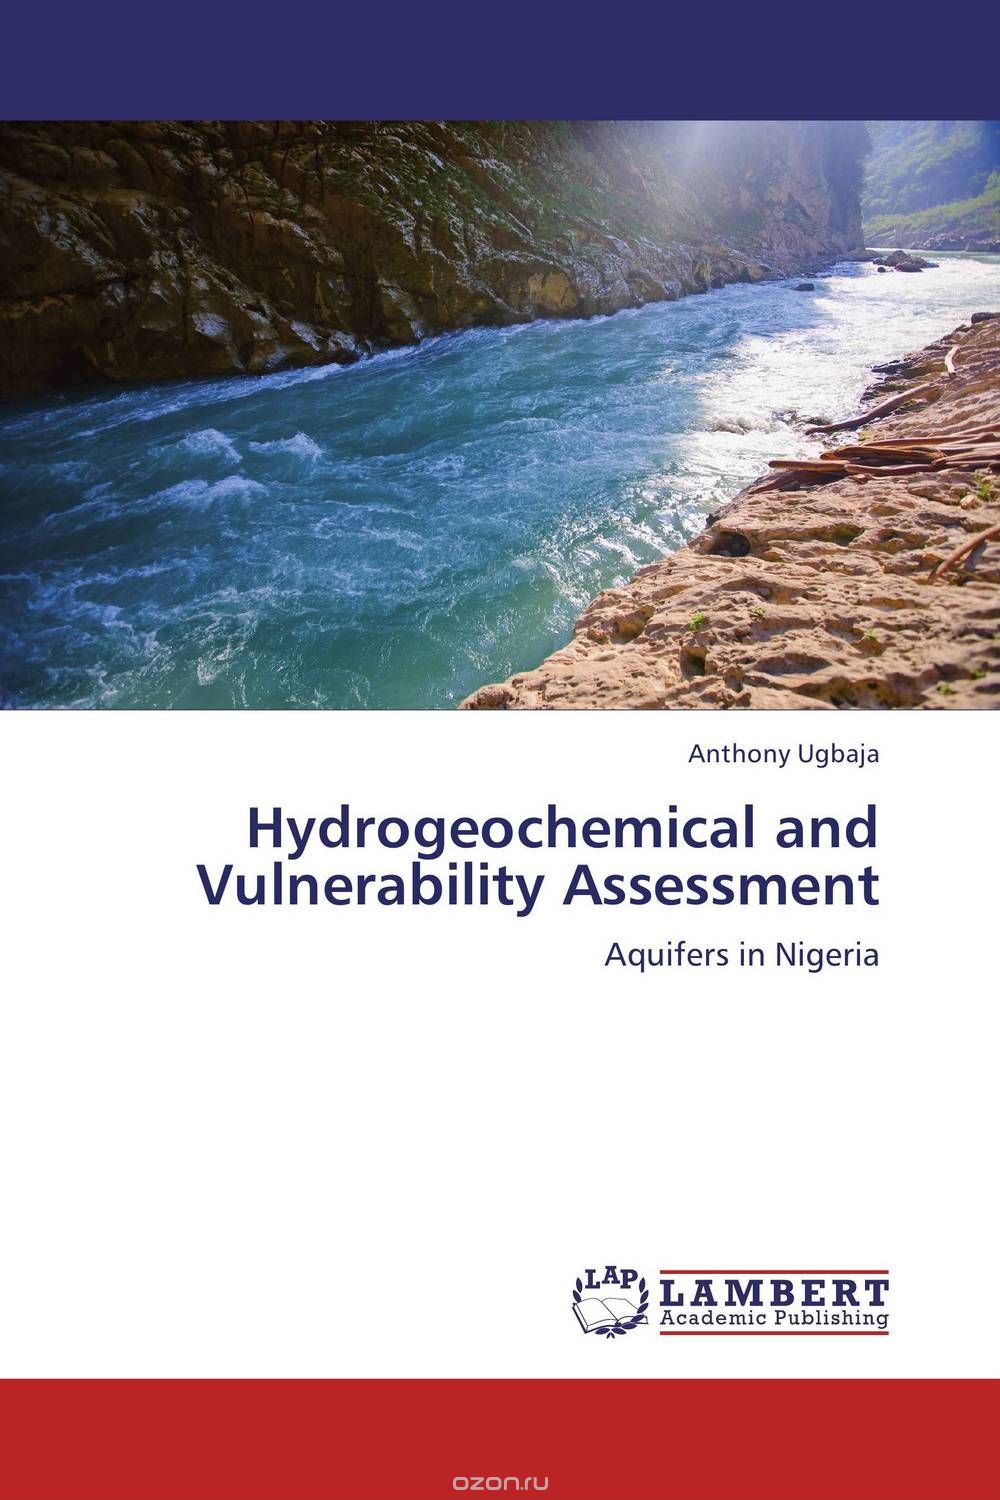 Скачать книгу "Hydrogeochemical and Vulnerability Assessment"